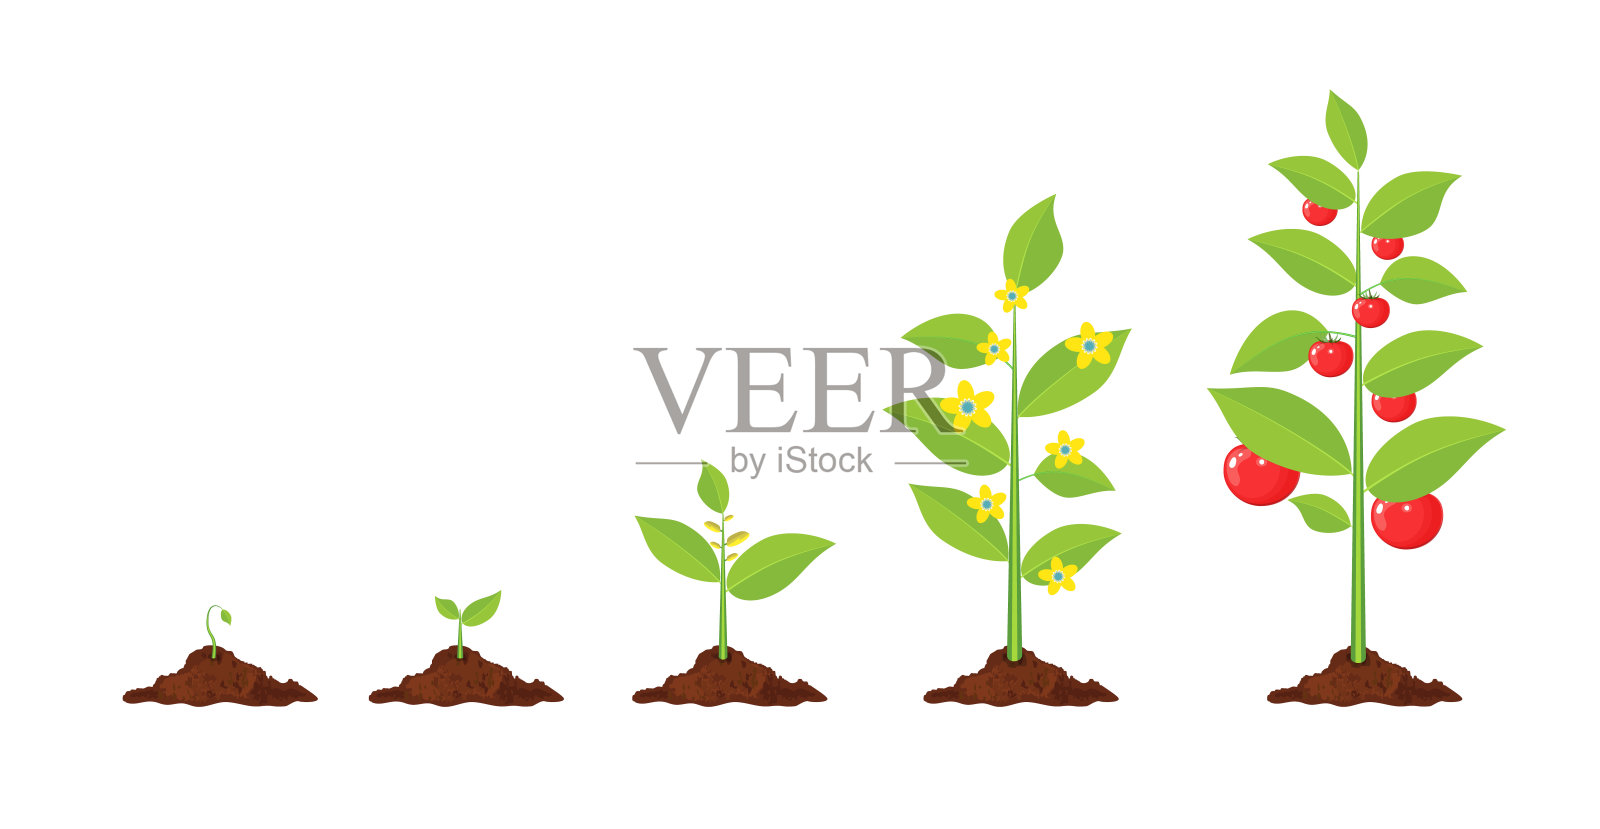 植物的生长，从萌芽到蔬菜。设计元素图片